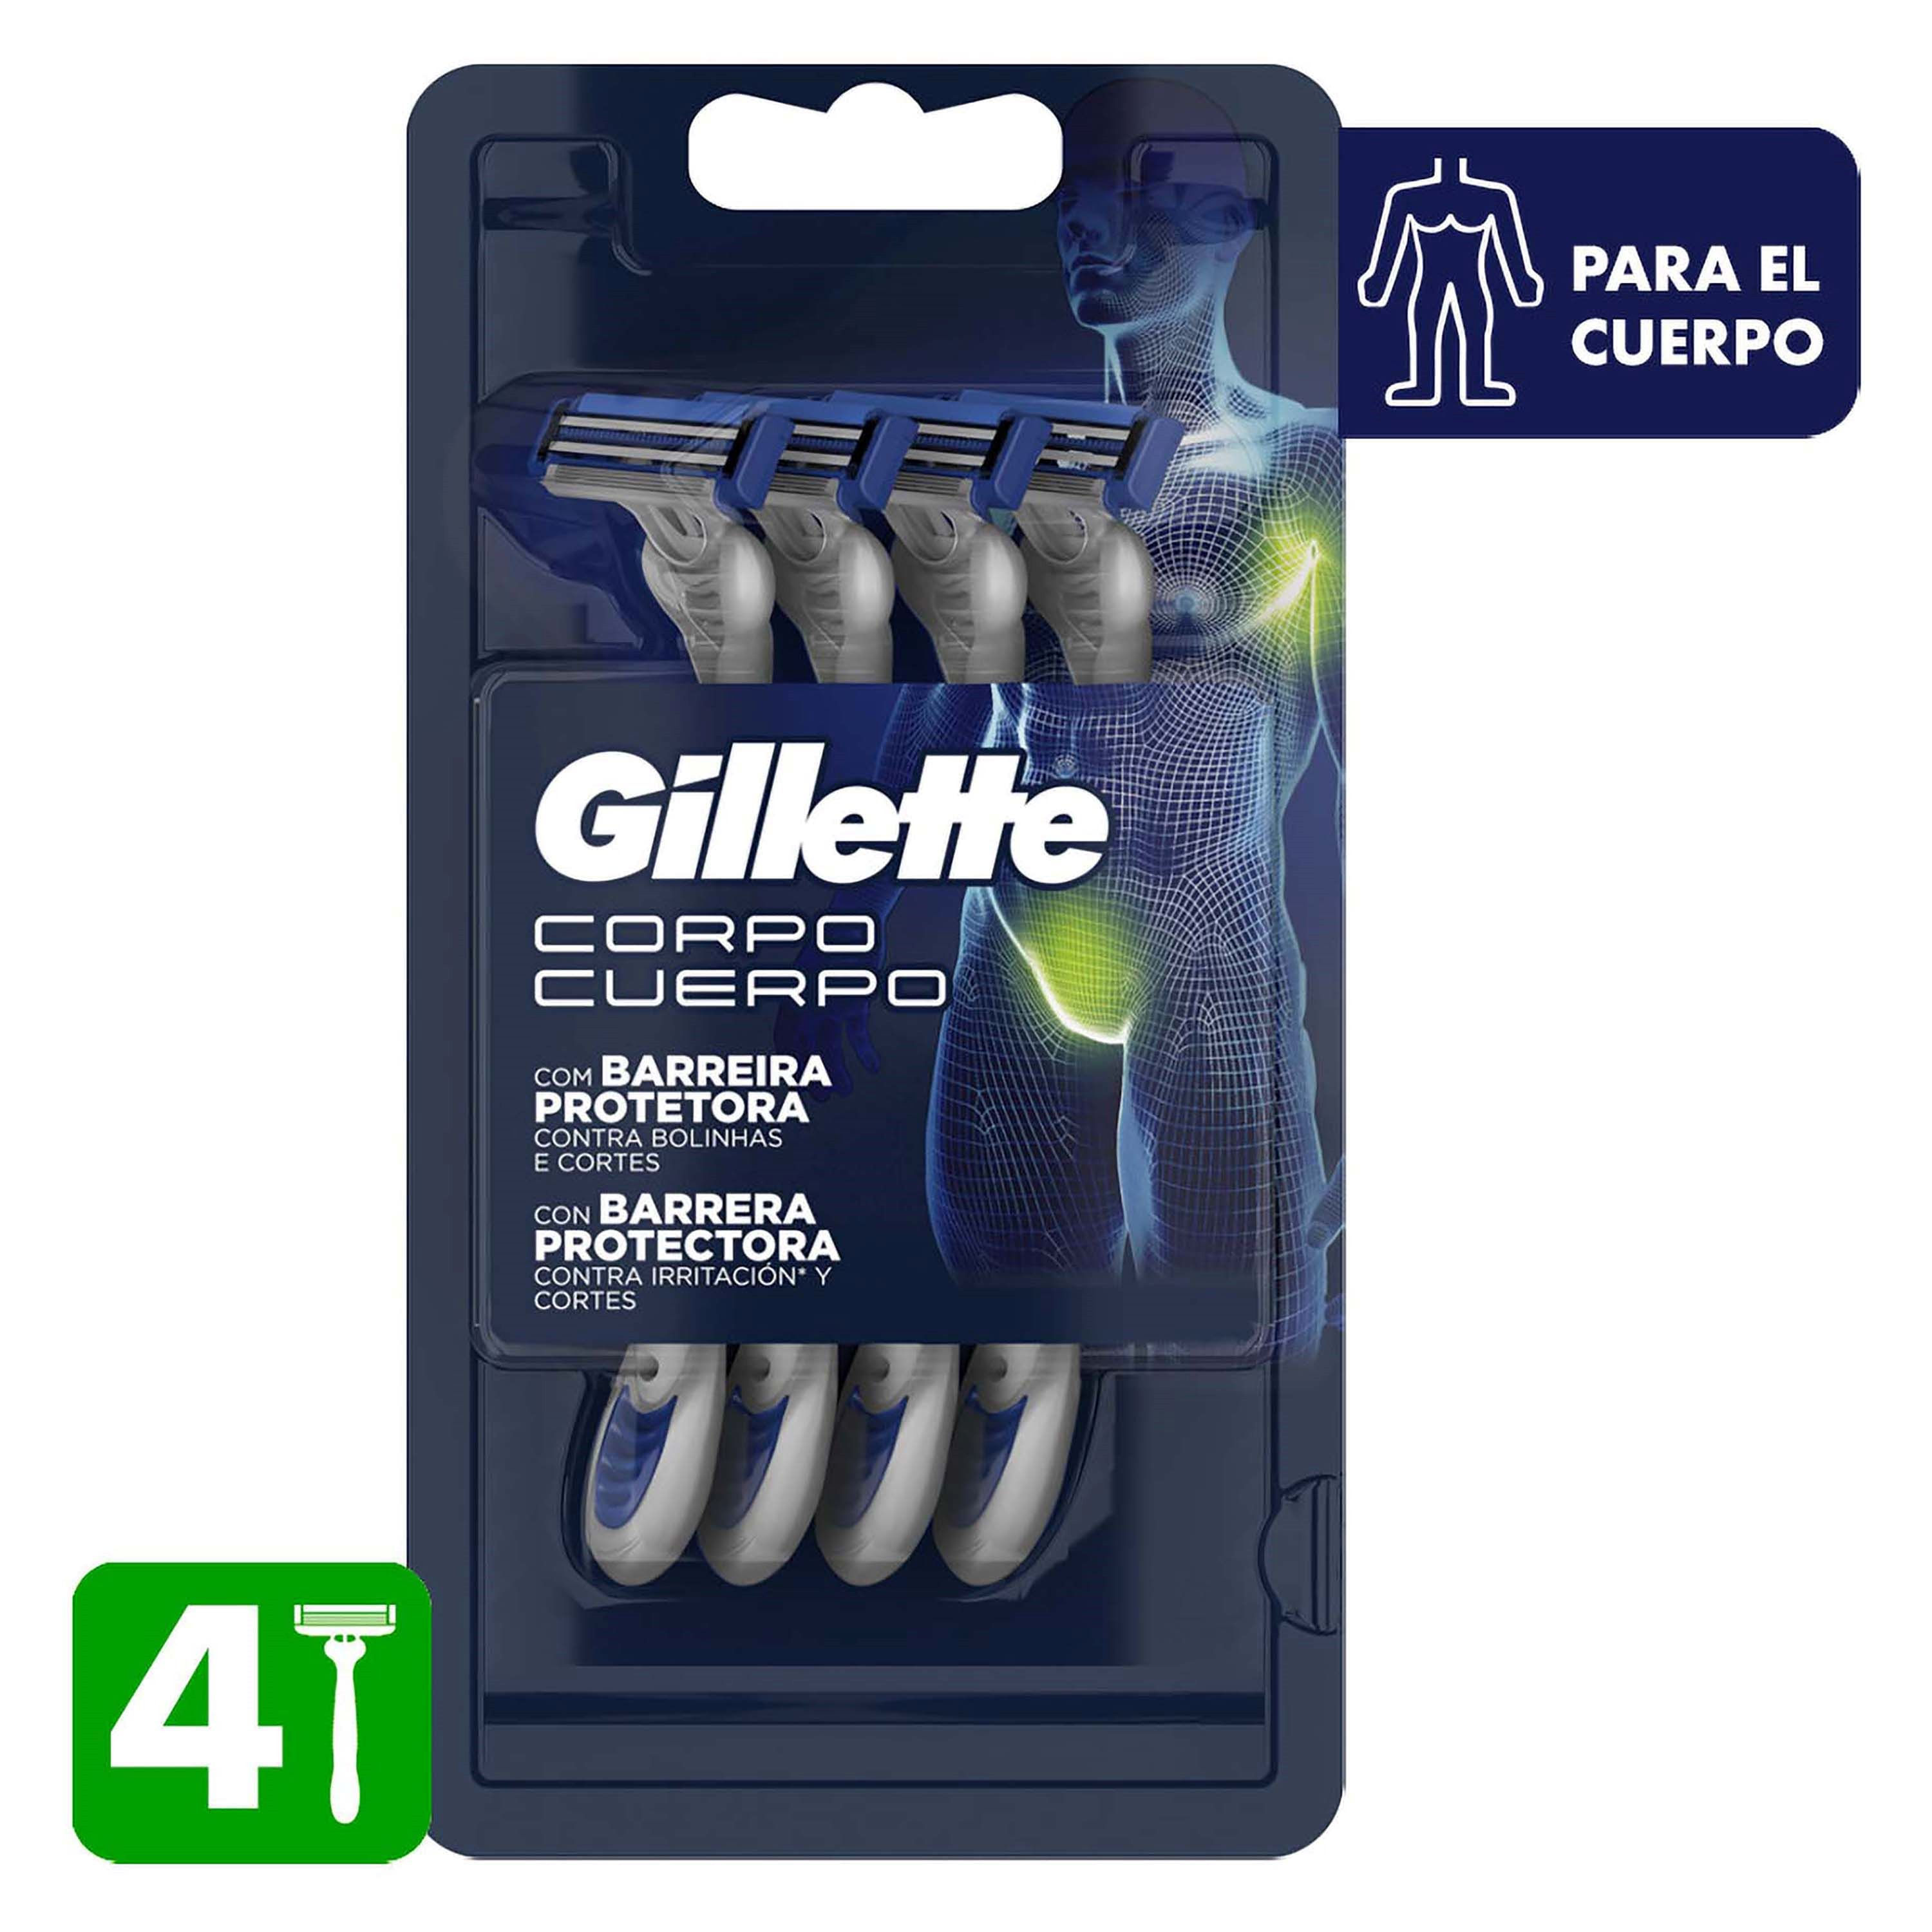 Comprar Máquinas De Afeitar Gillette Desechables Para El Cuerpo 4uds Walmart Nicaragua 7357